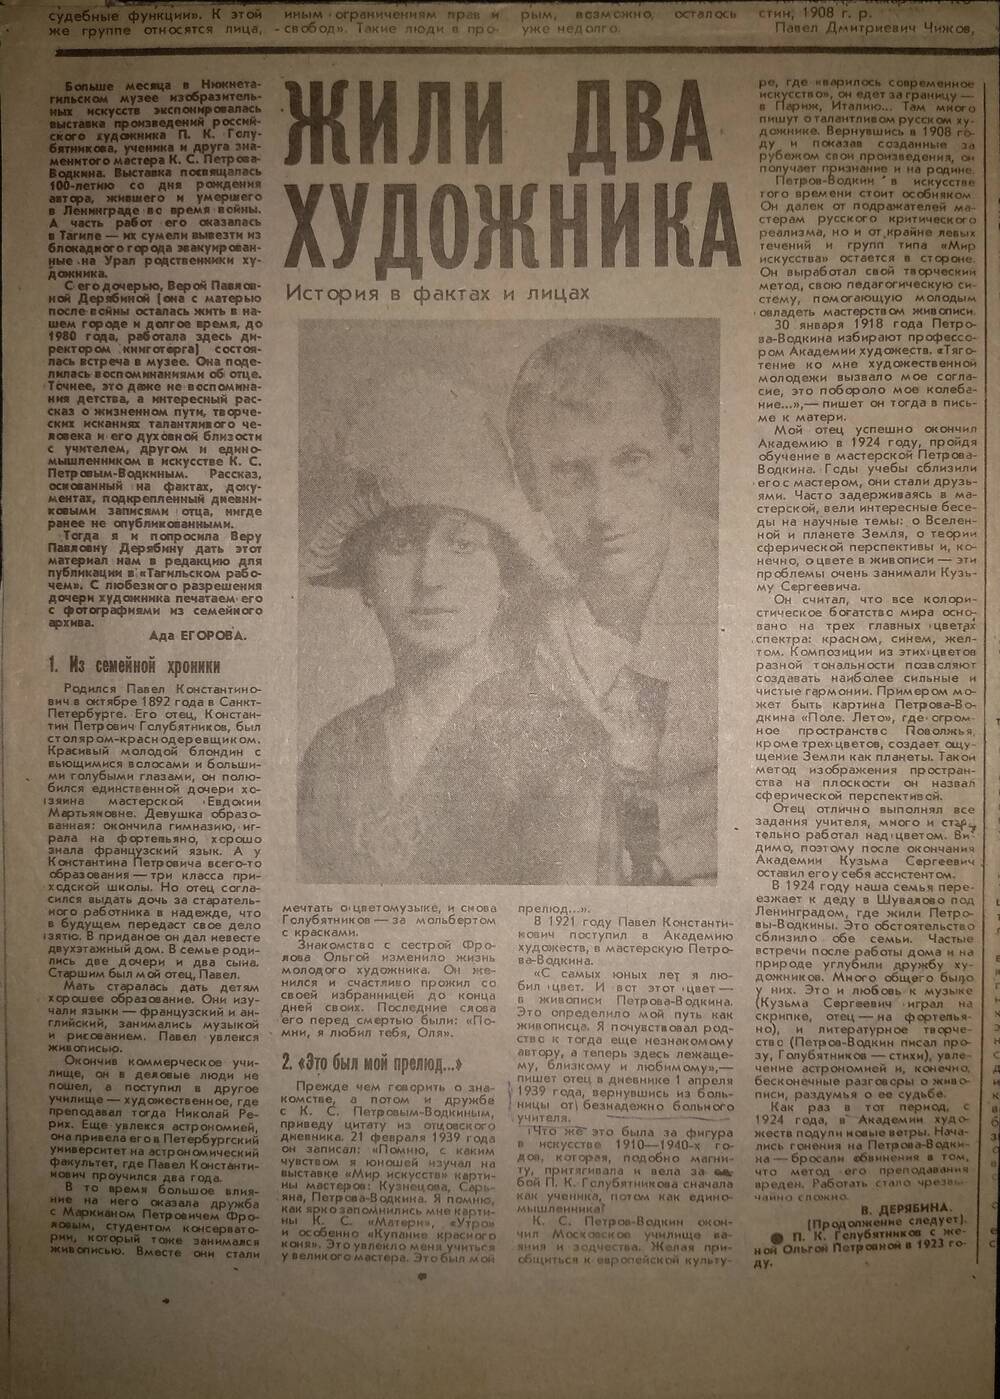 Вырезка из газеты «Тагильский рабочий» от 4 февраля 1993 г. со статьёй «Жили два художника» о художниках П.К. Голубятникове и К.С. Петрове-Водкине